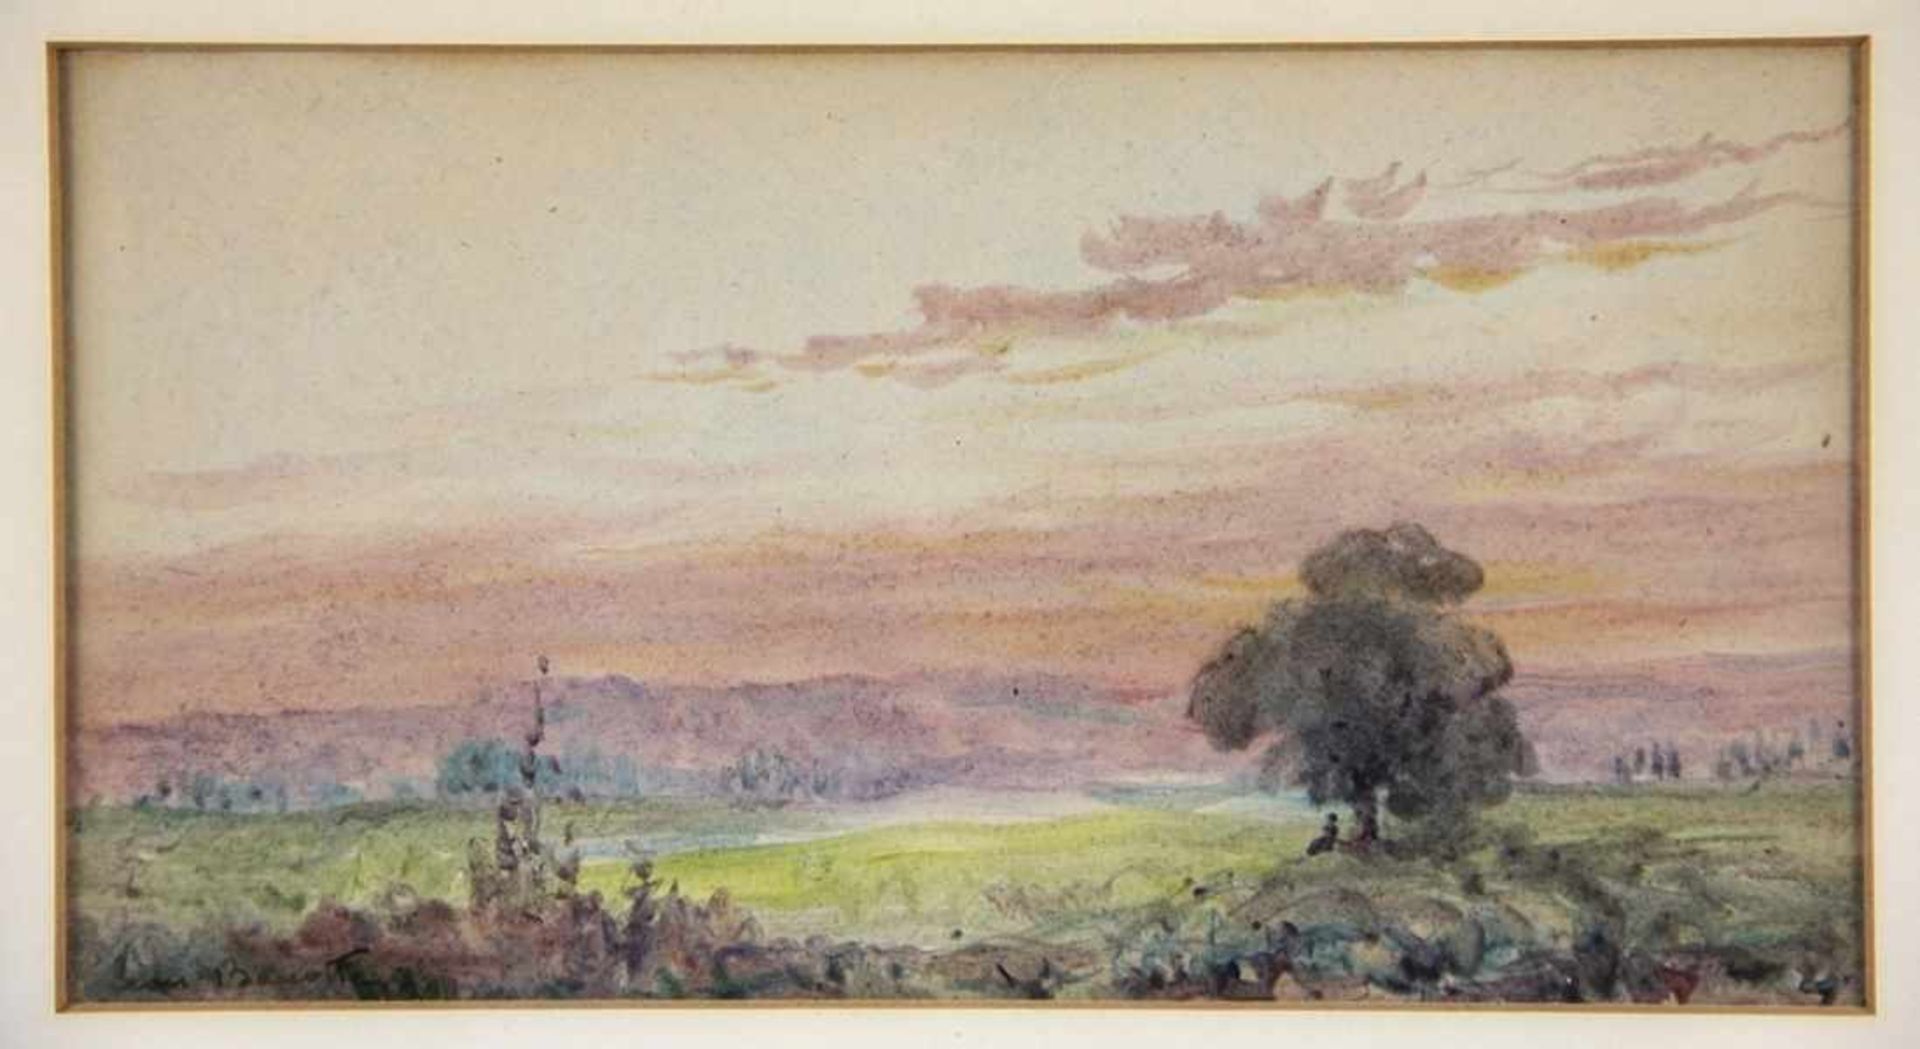 Barotte, Leon1866-1933, Aquarell/Mischtechnik, abendliche Landschaft, unter einem Baum 2 Personen,